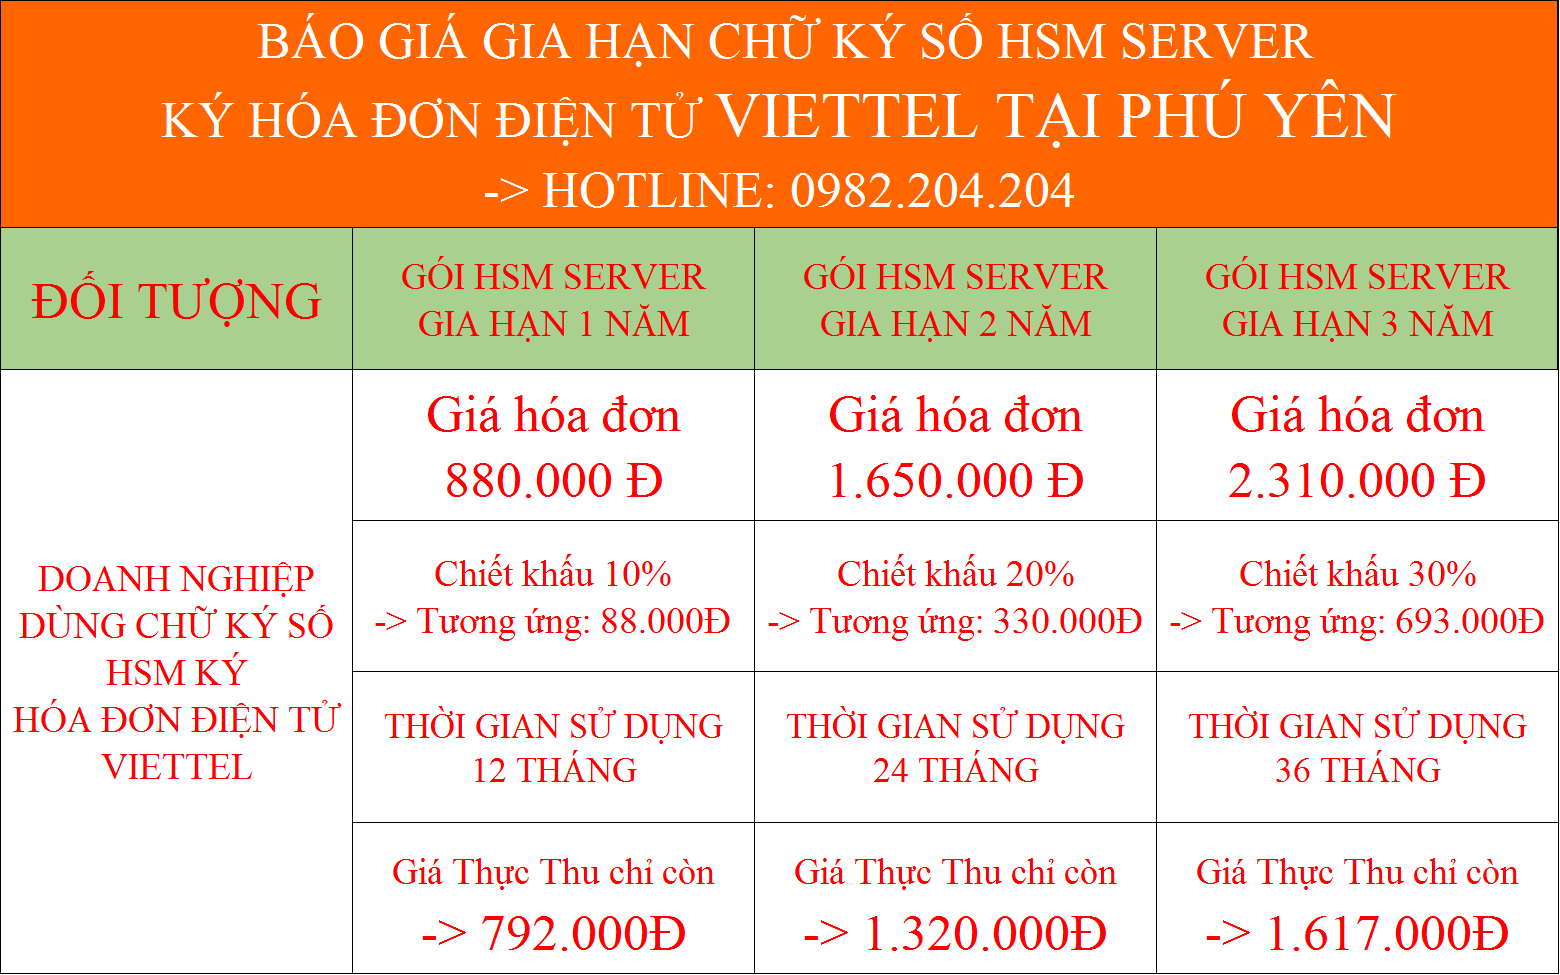 Gia hạn dịch vụ chữ ký số HSM ký hóa đơn điện tử Viettel Phú Yên